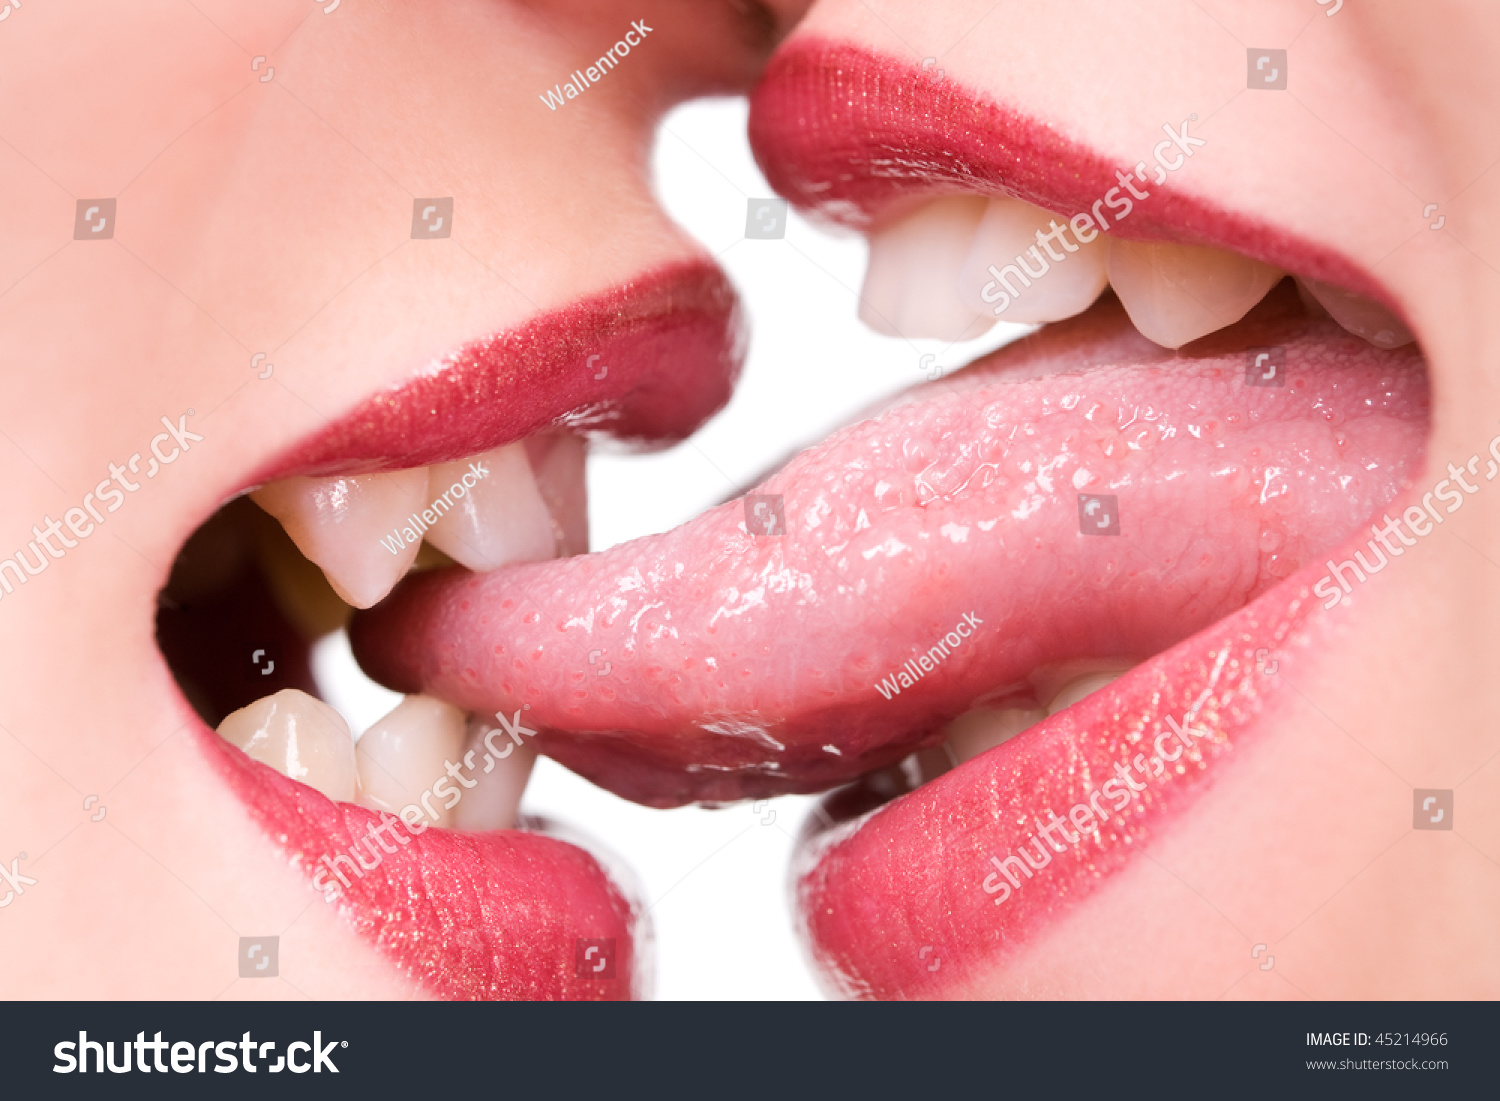 Девушка лижет губы